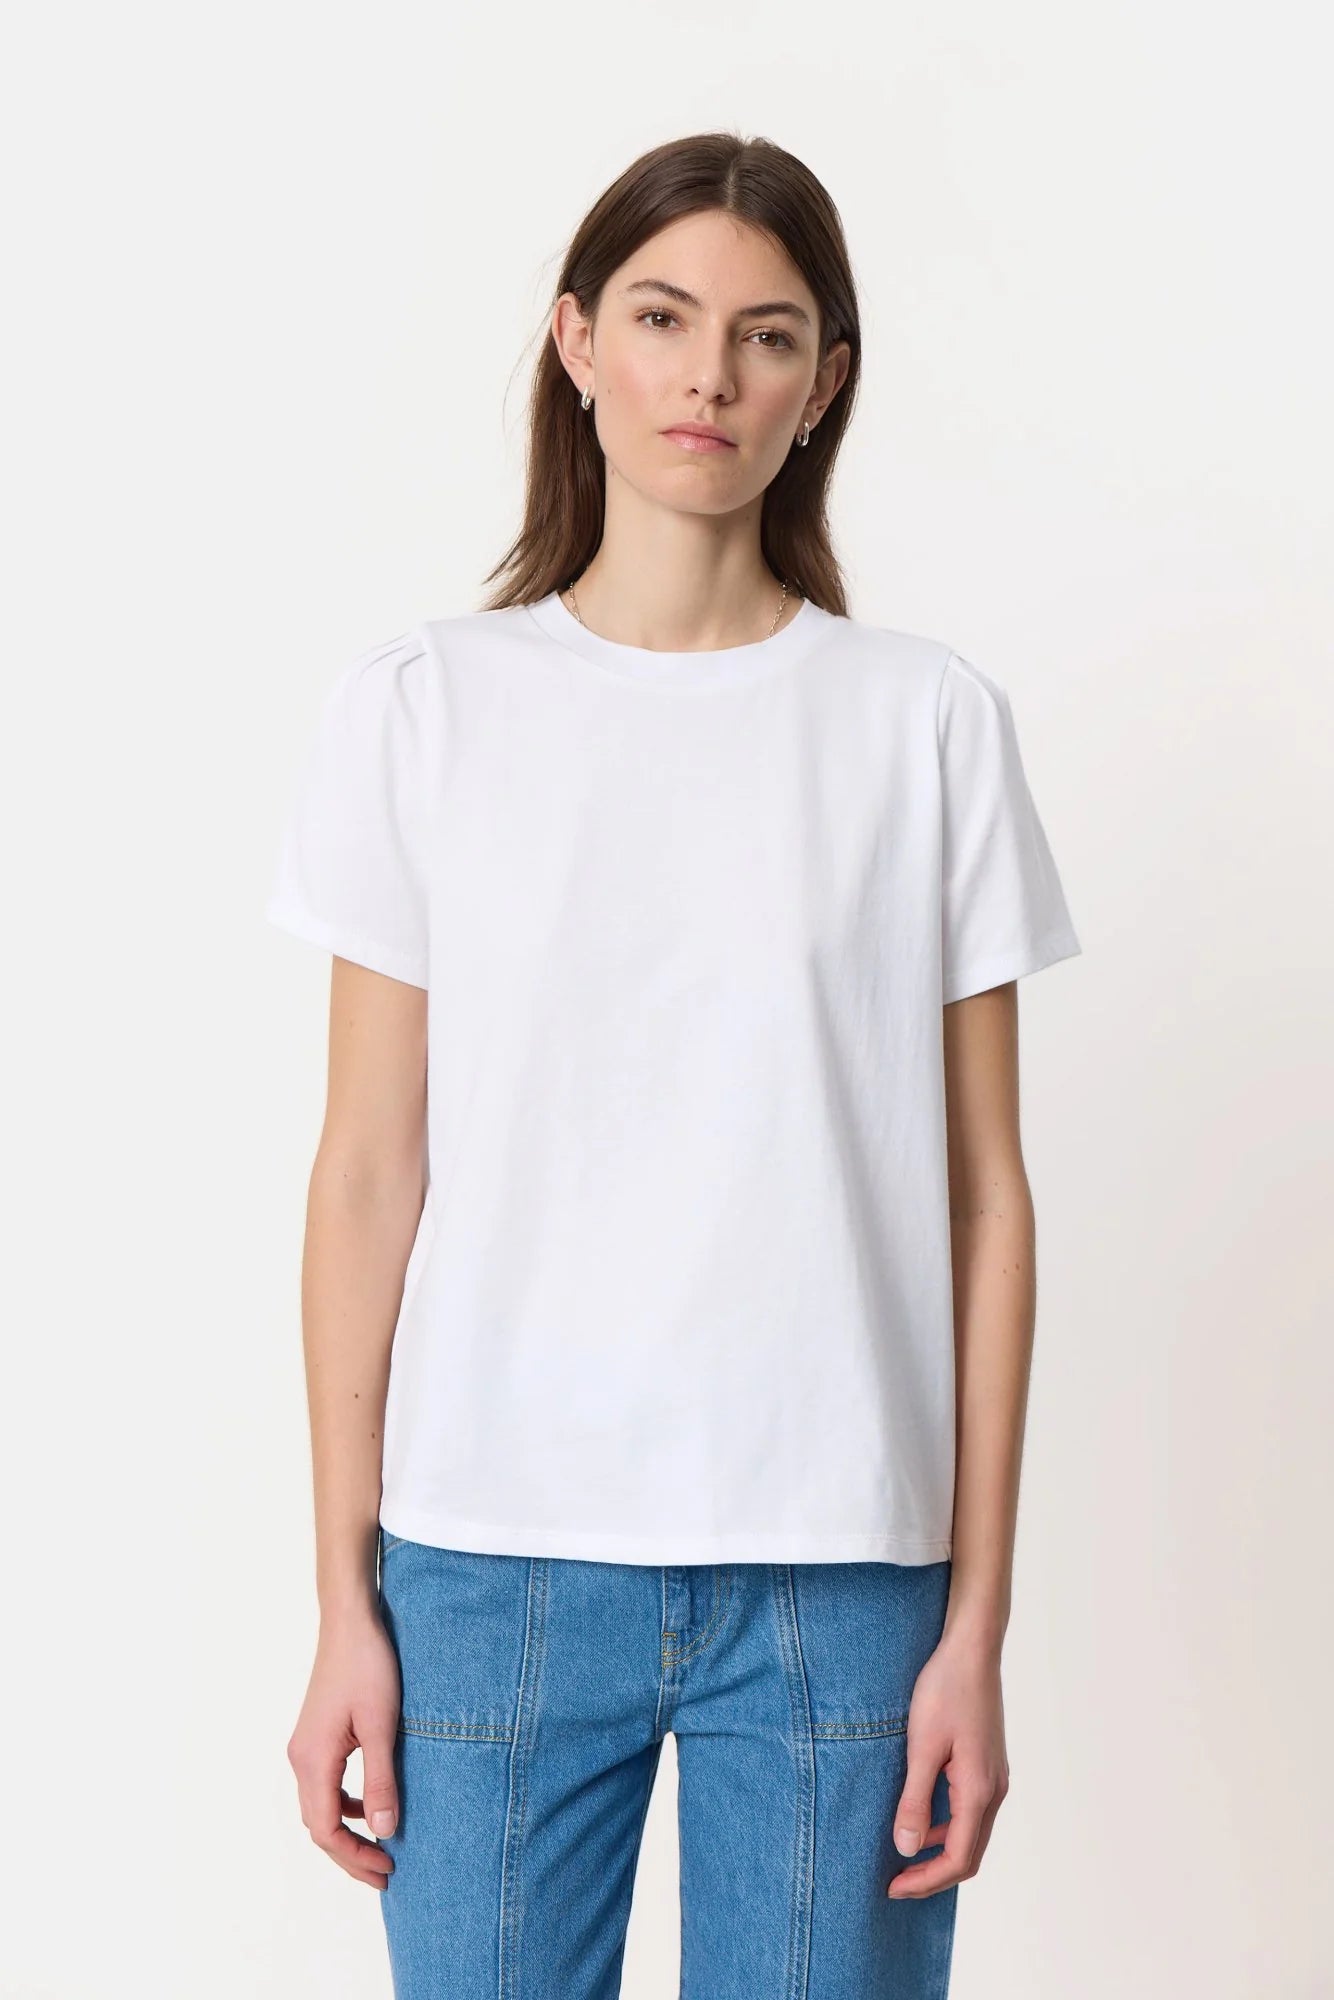 LR-KOWA 5 T-shirt - Hvid